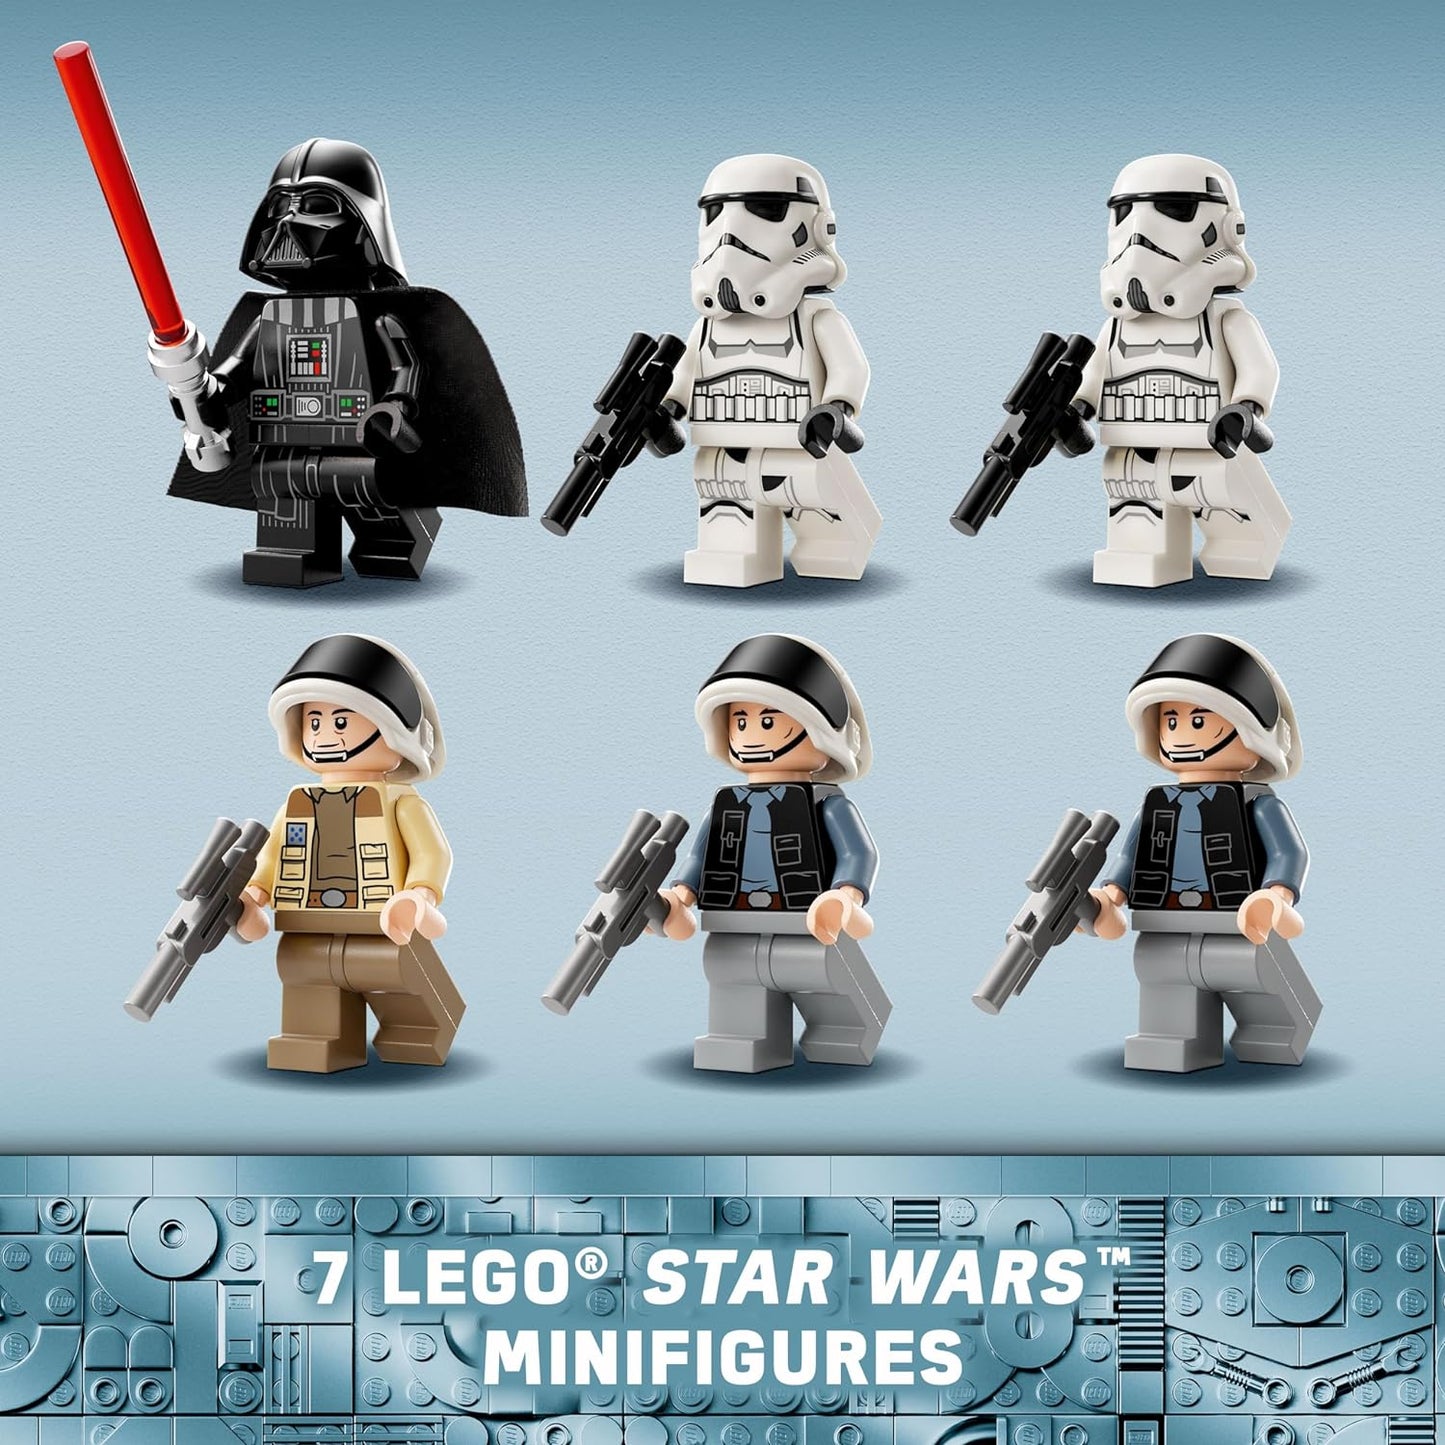 LEGO Conjunto de 25 anos do Star Wars Millenium Falcon para adultos, kit de modelo de veículo colecionável da nave estelar New Hope, decoração de casa ou escritório, presentes de aniversário para homens, mulheres e fãs 75375